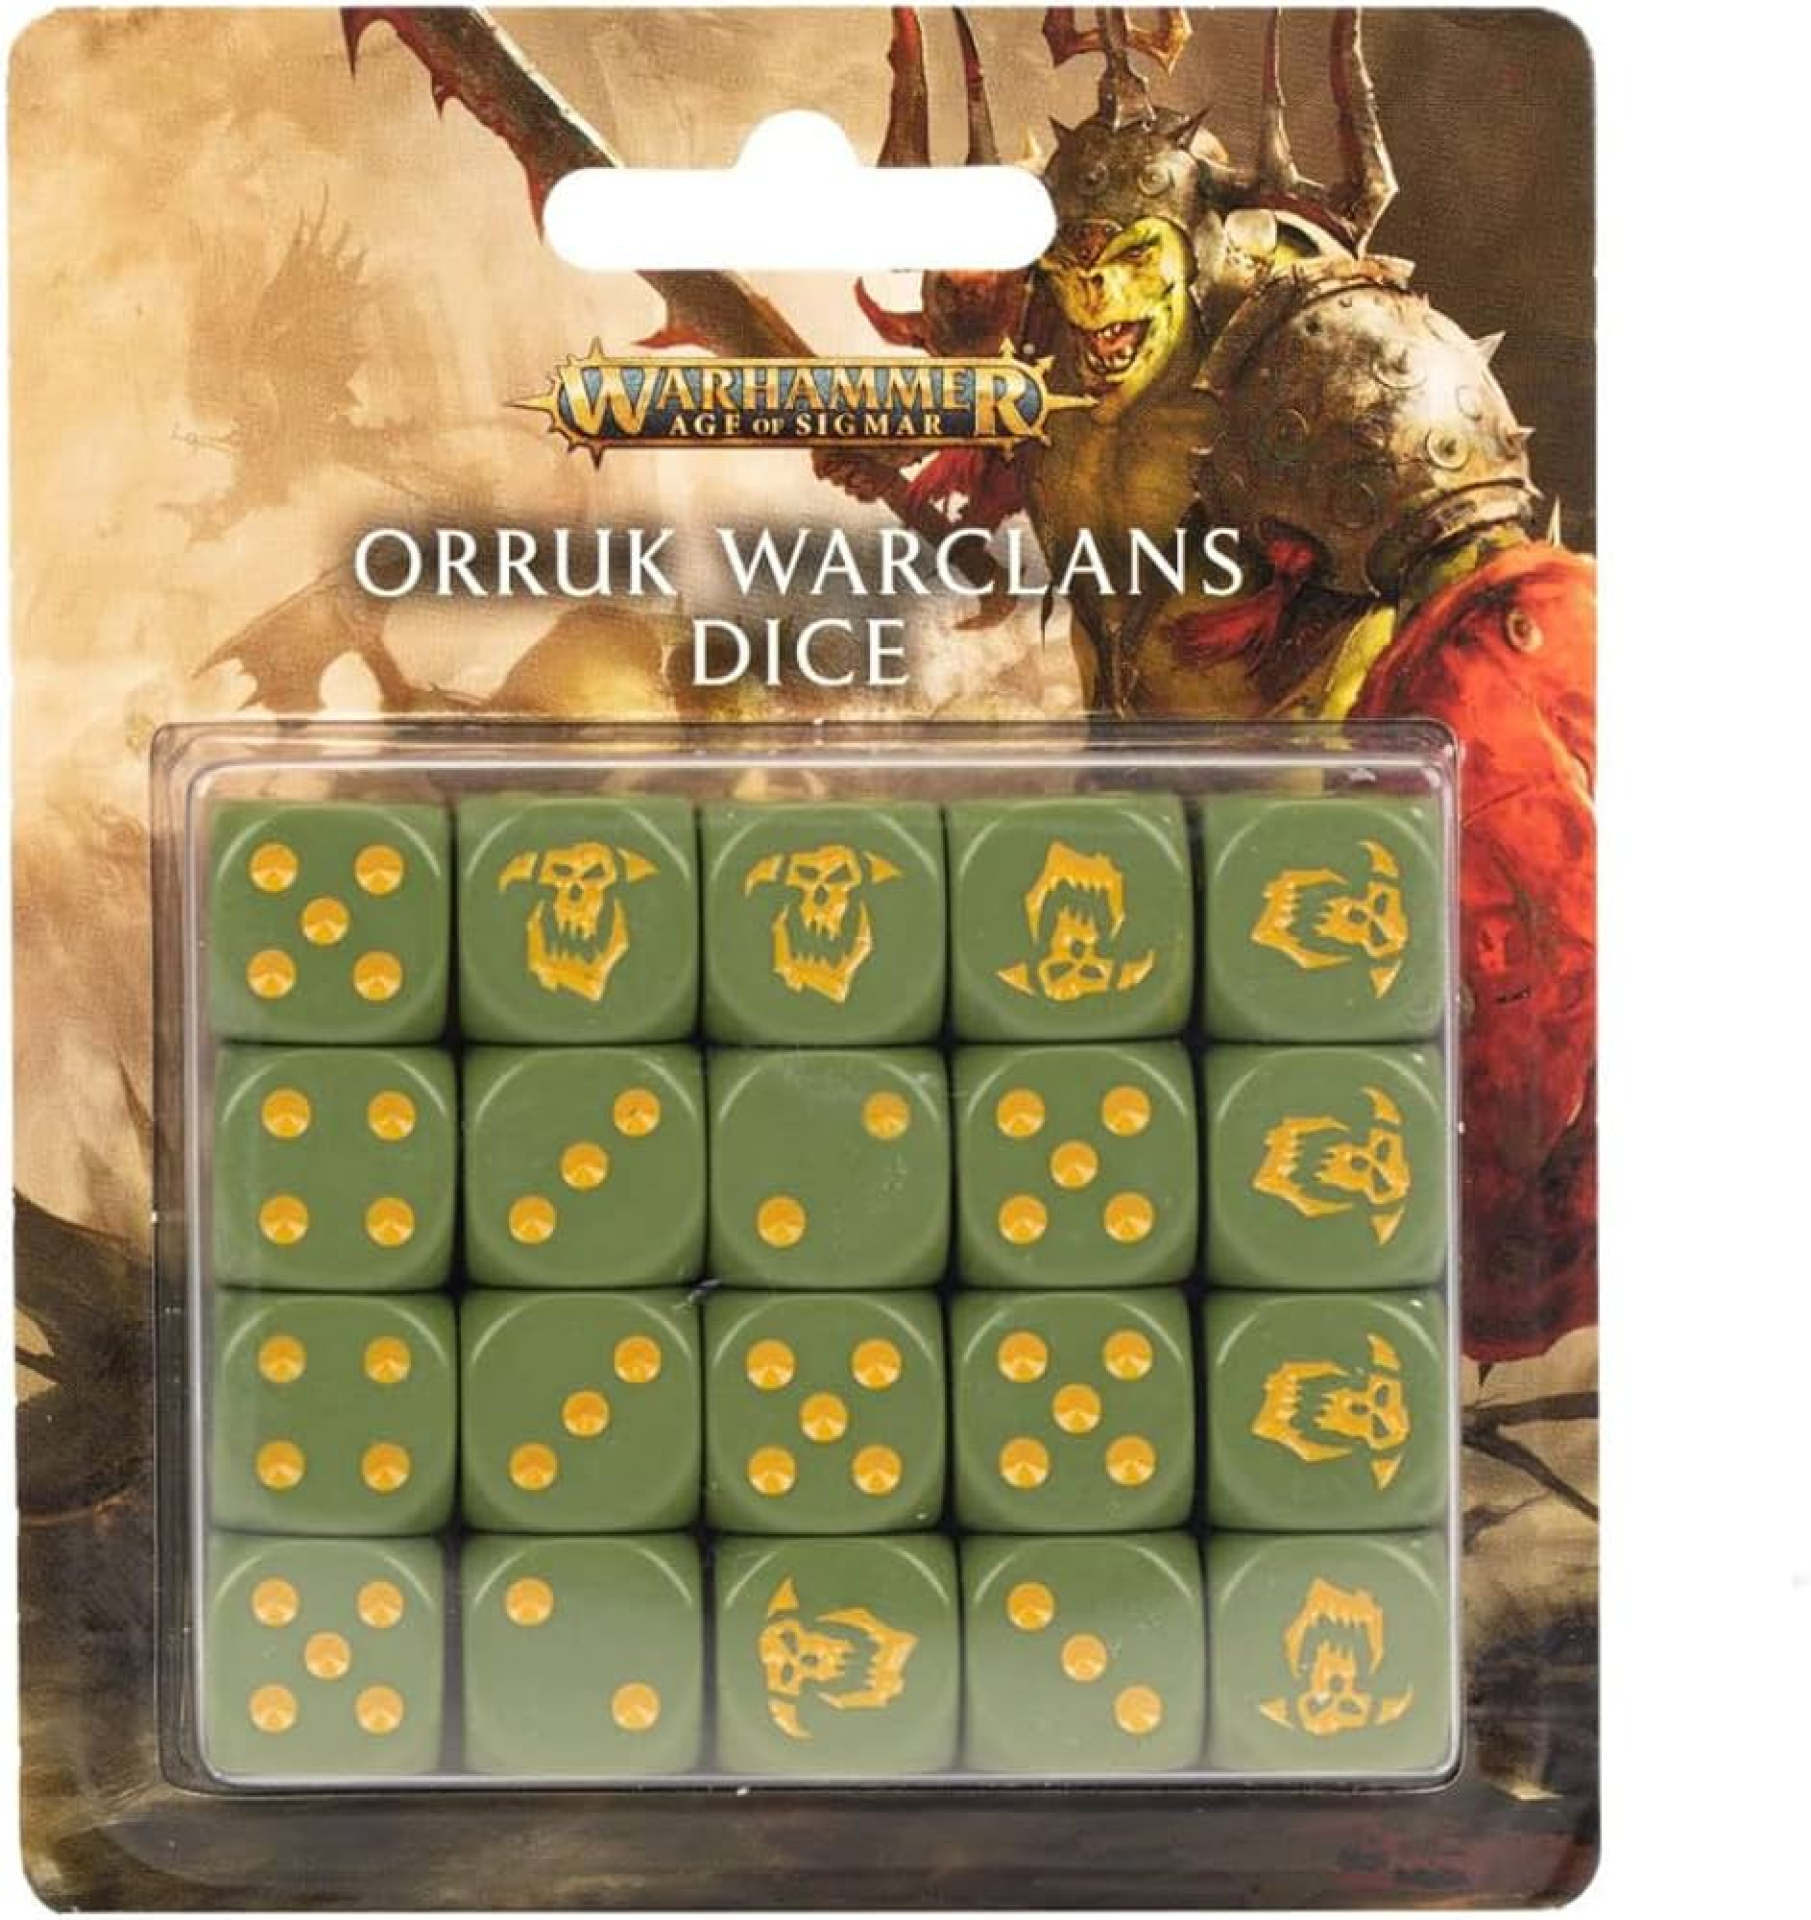 orruk warclans dice